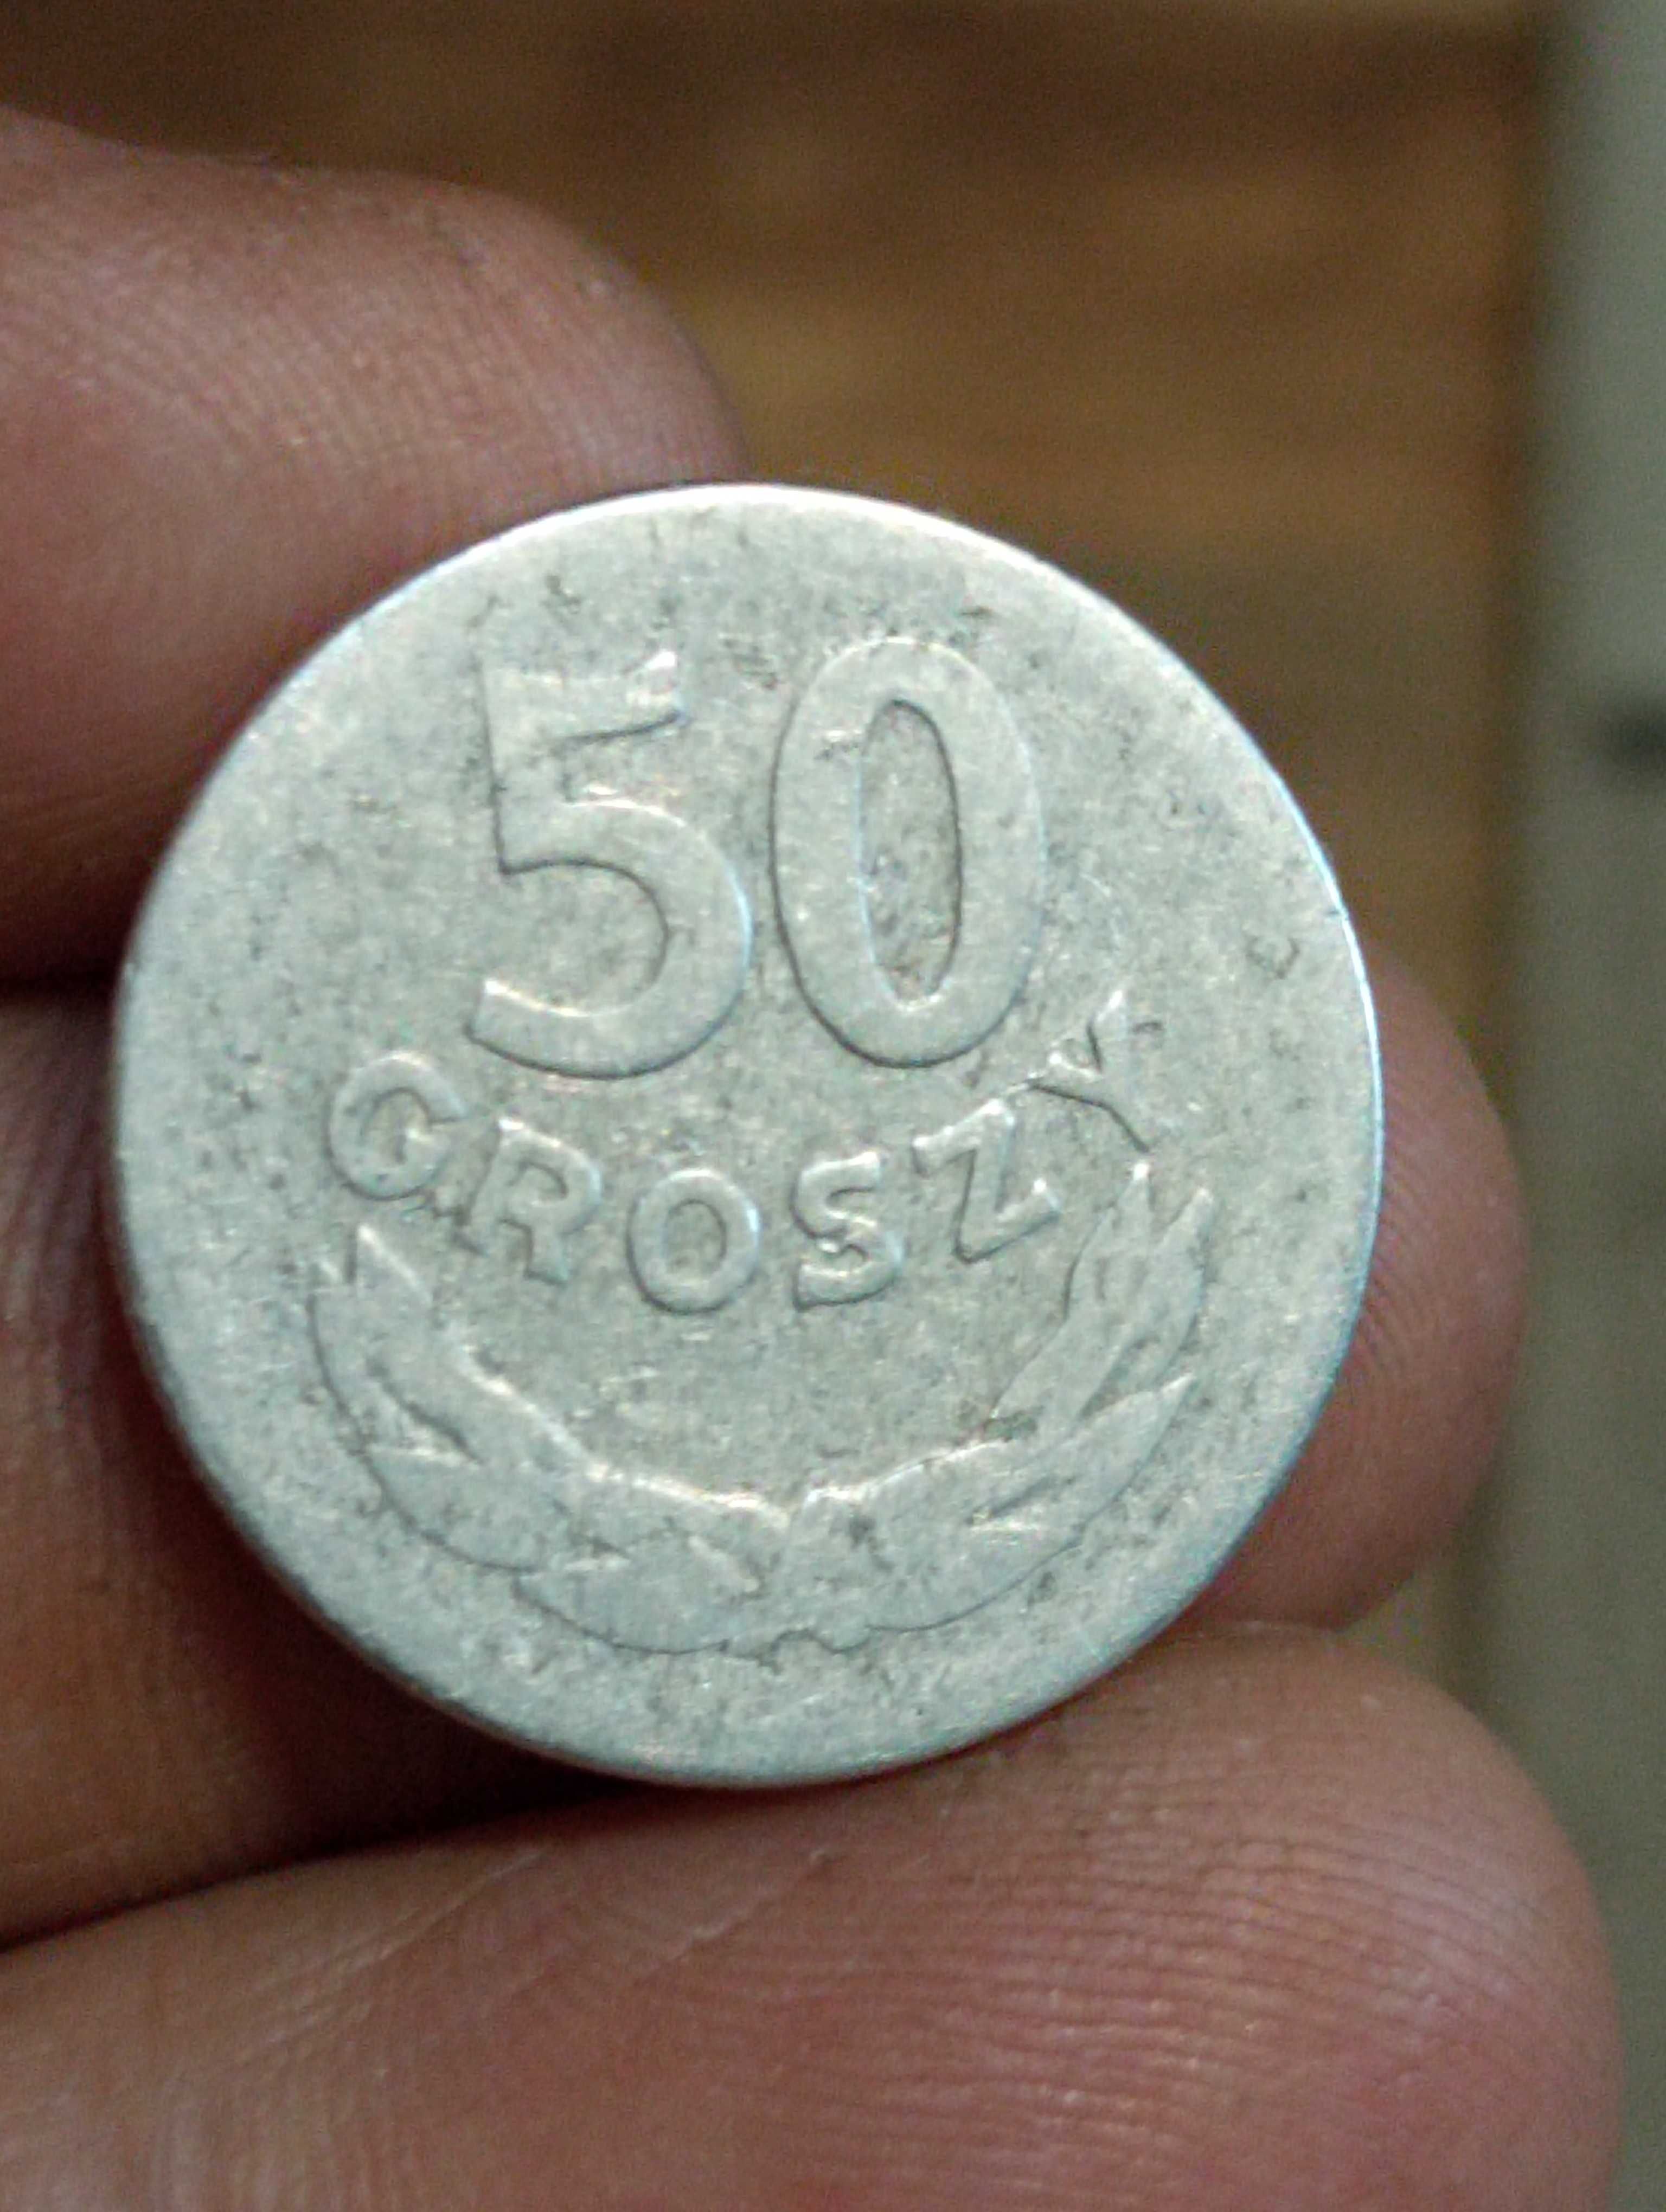 Sprzedam monete trzecia 50 groszy 1965 rok